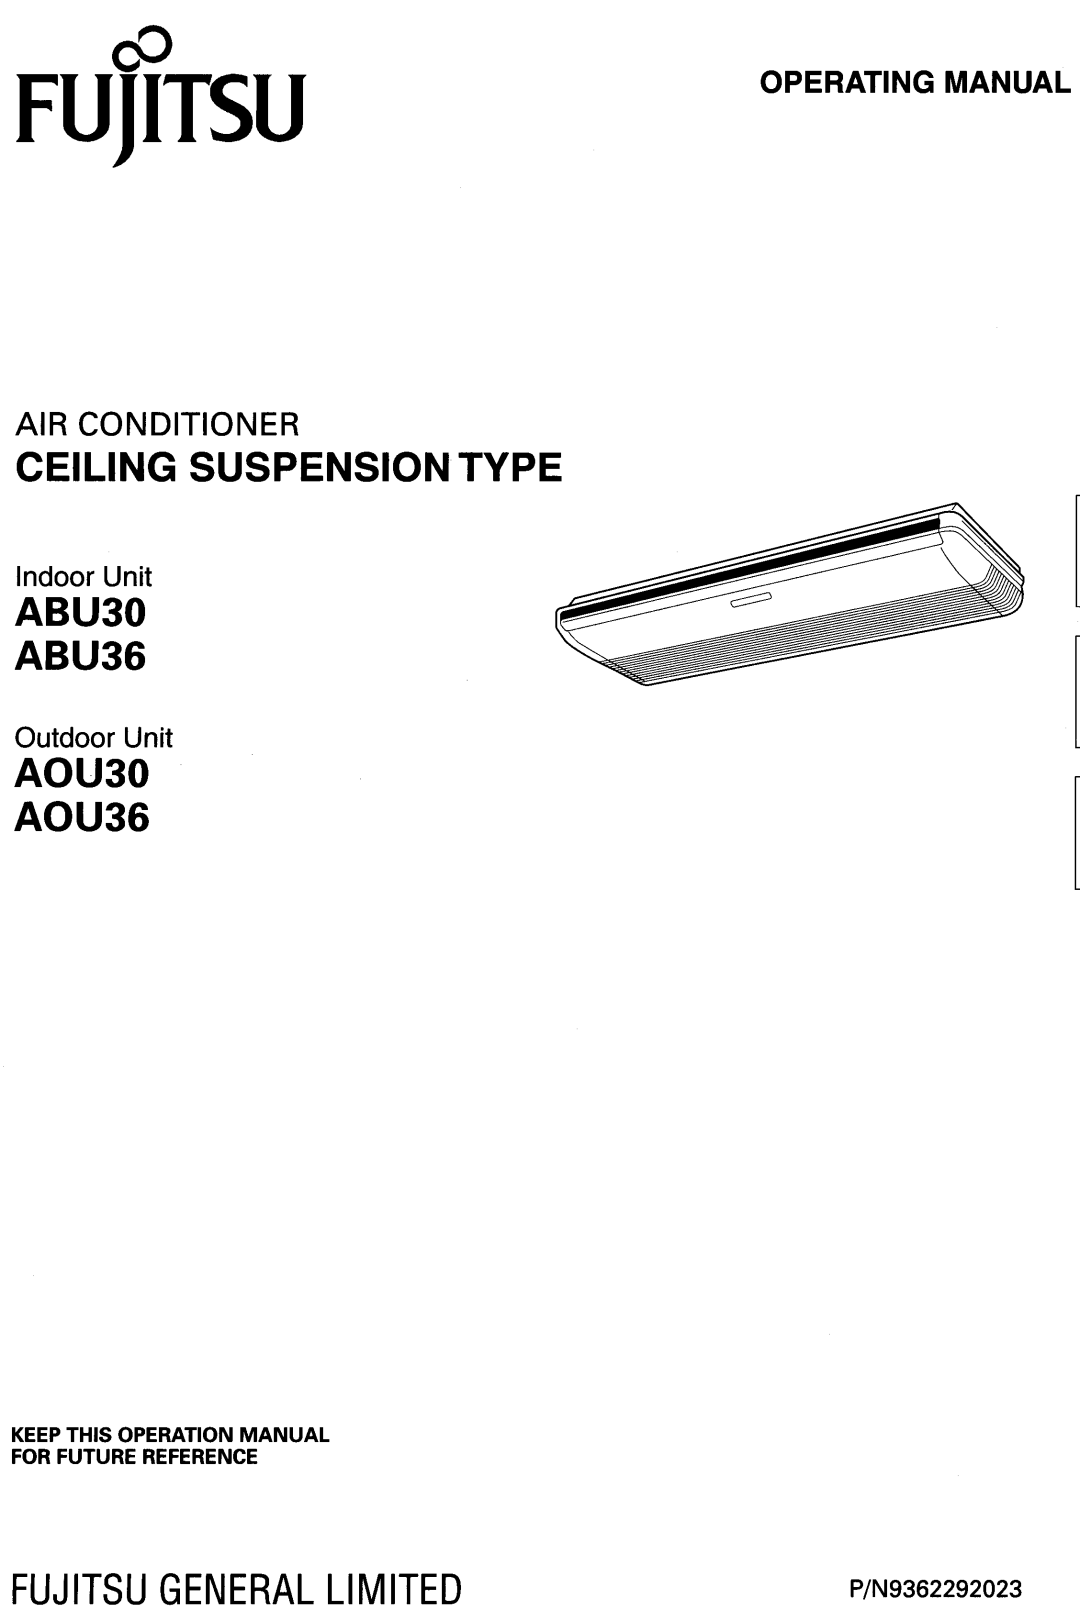 Fujitsu Air Conditioner Ceiling Suspension Type, ABU30 manual 